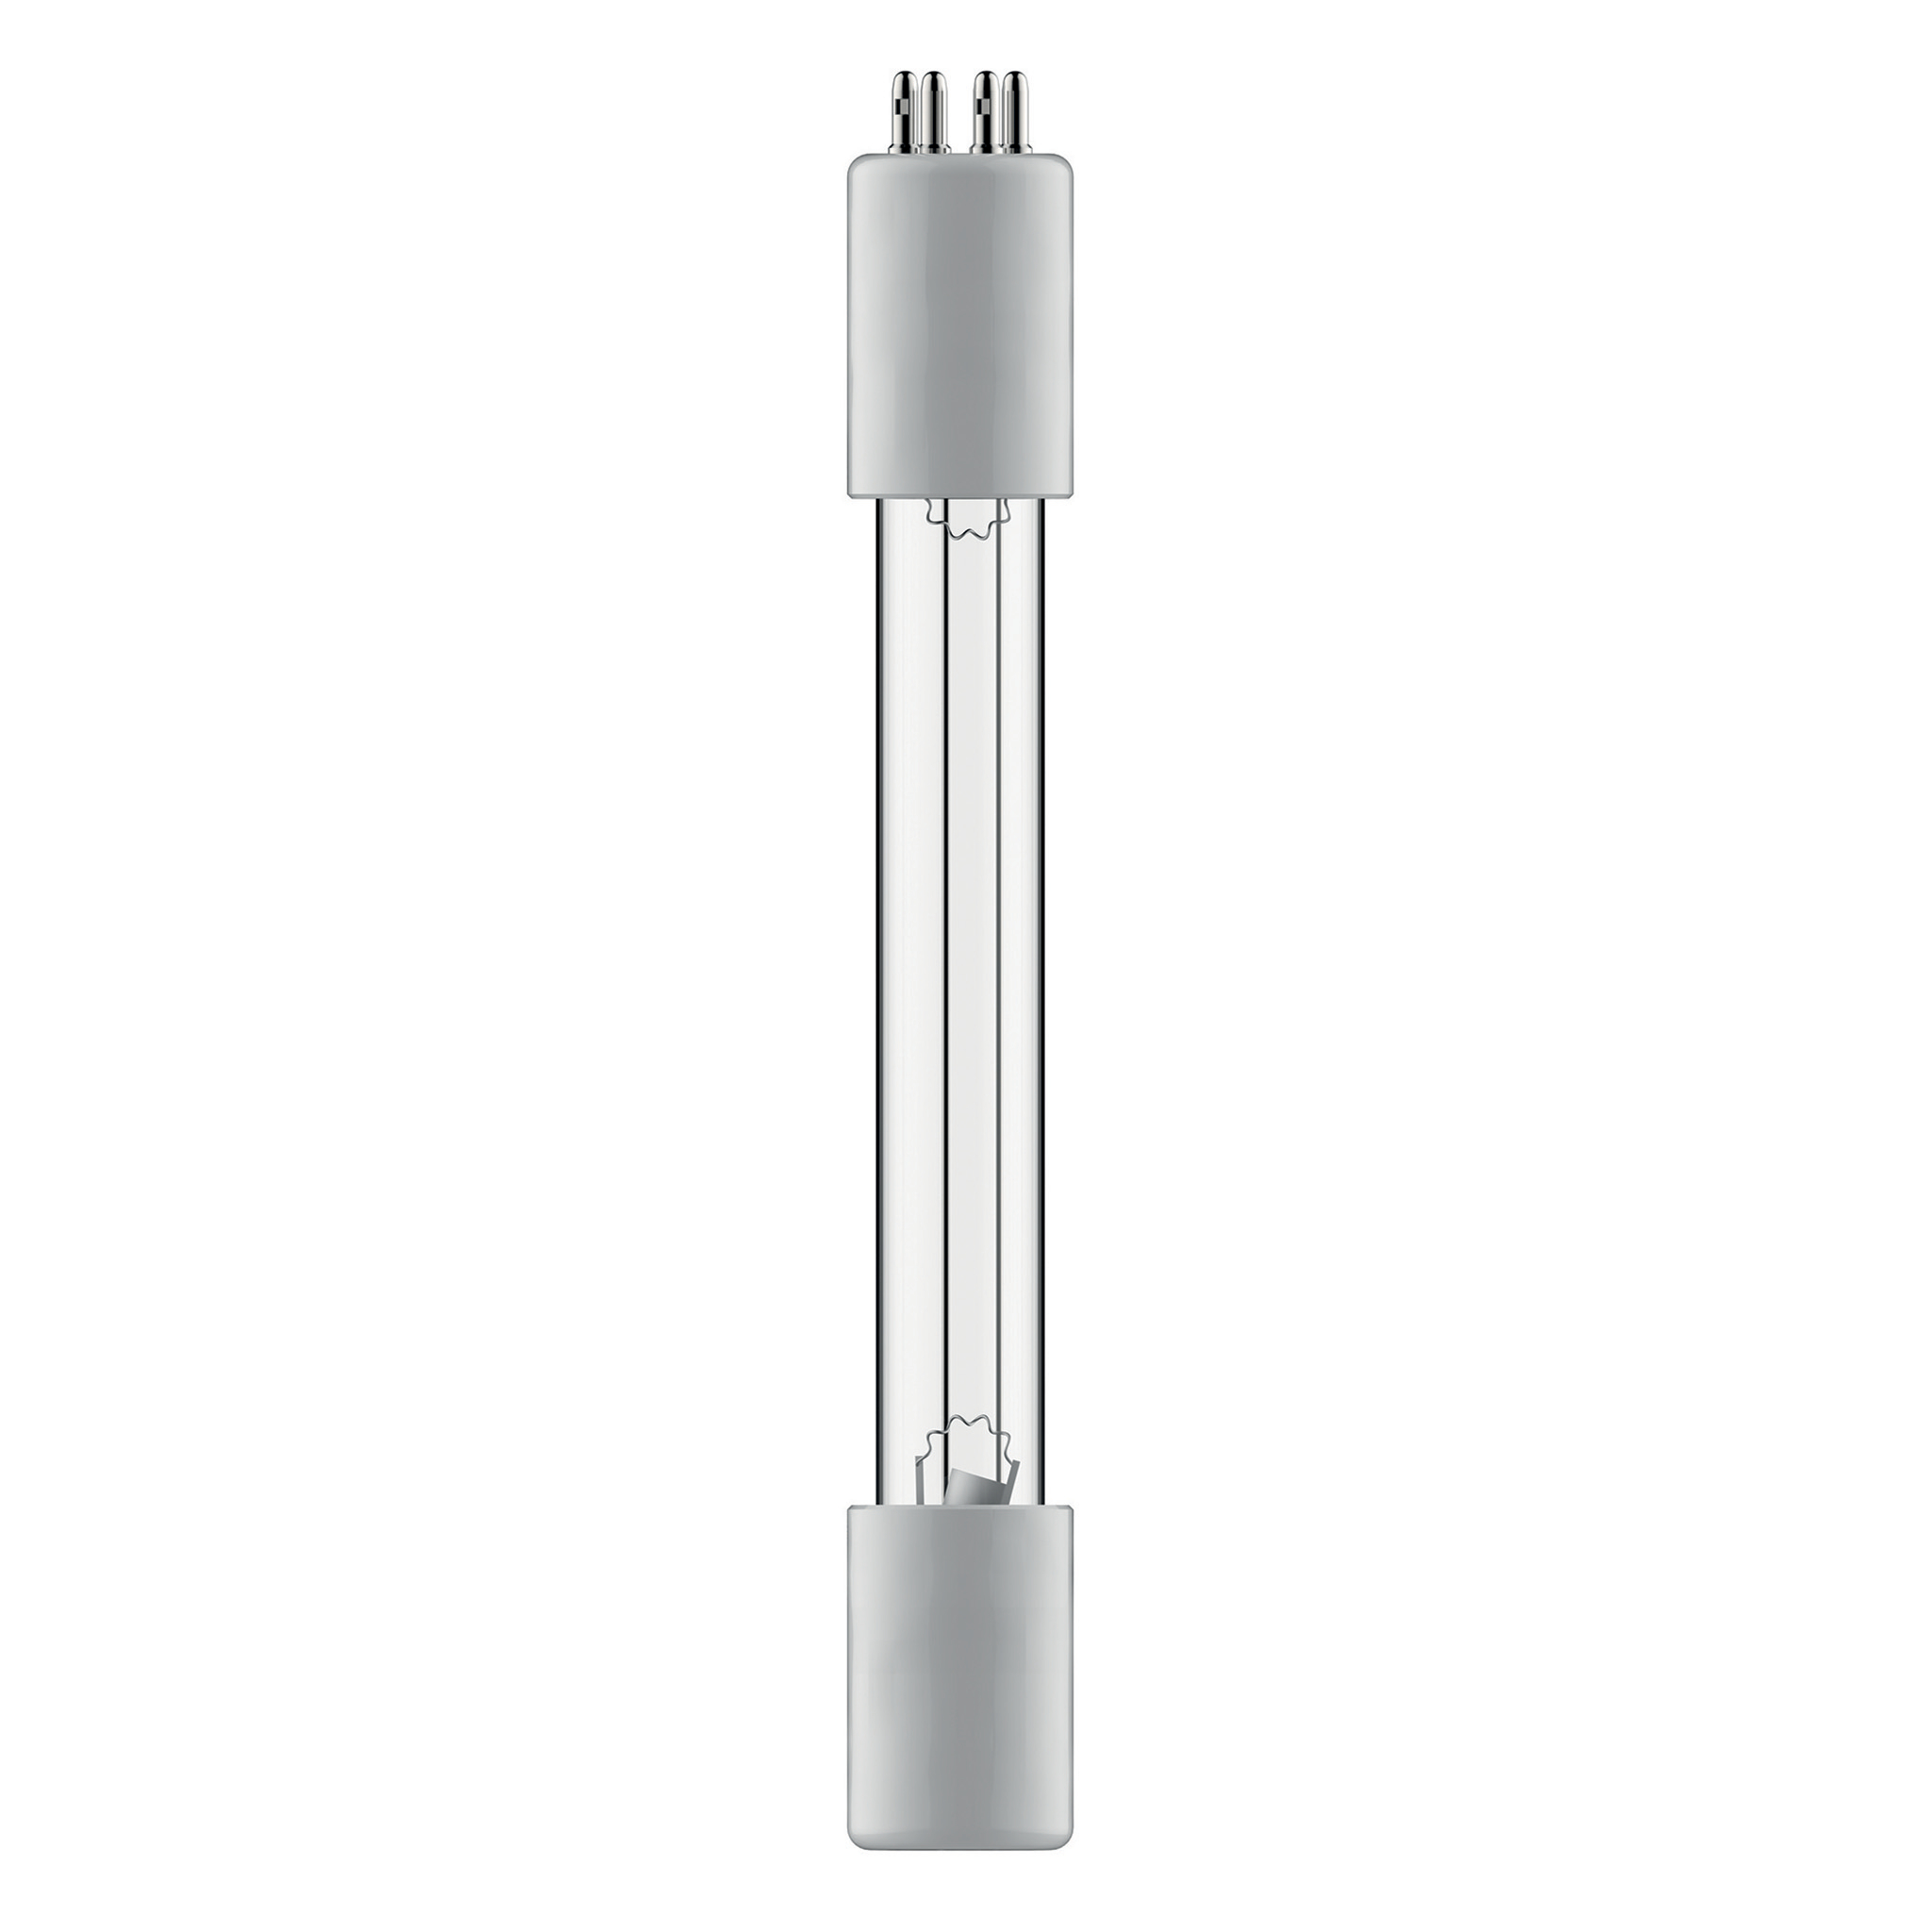 LEITZ Ampoule de remplacement UV-C 2415150 pour TruSens Z-3000